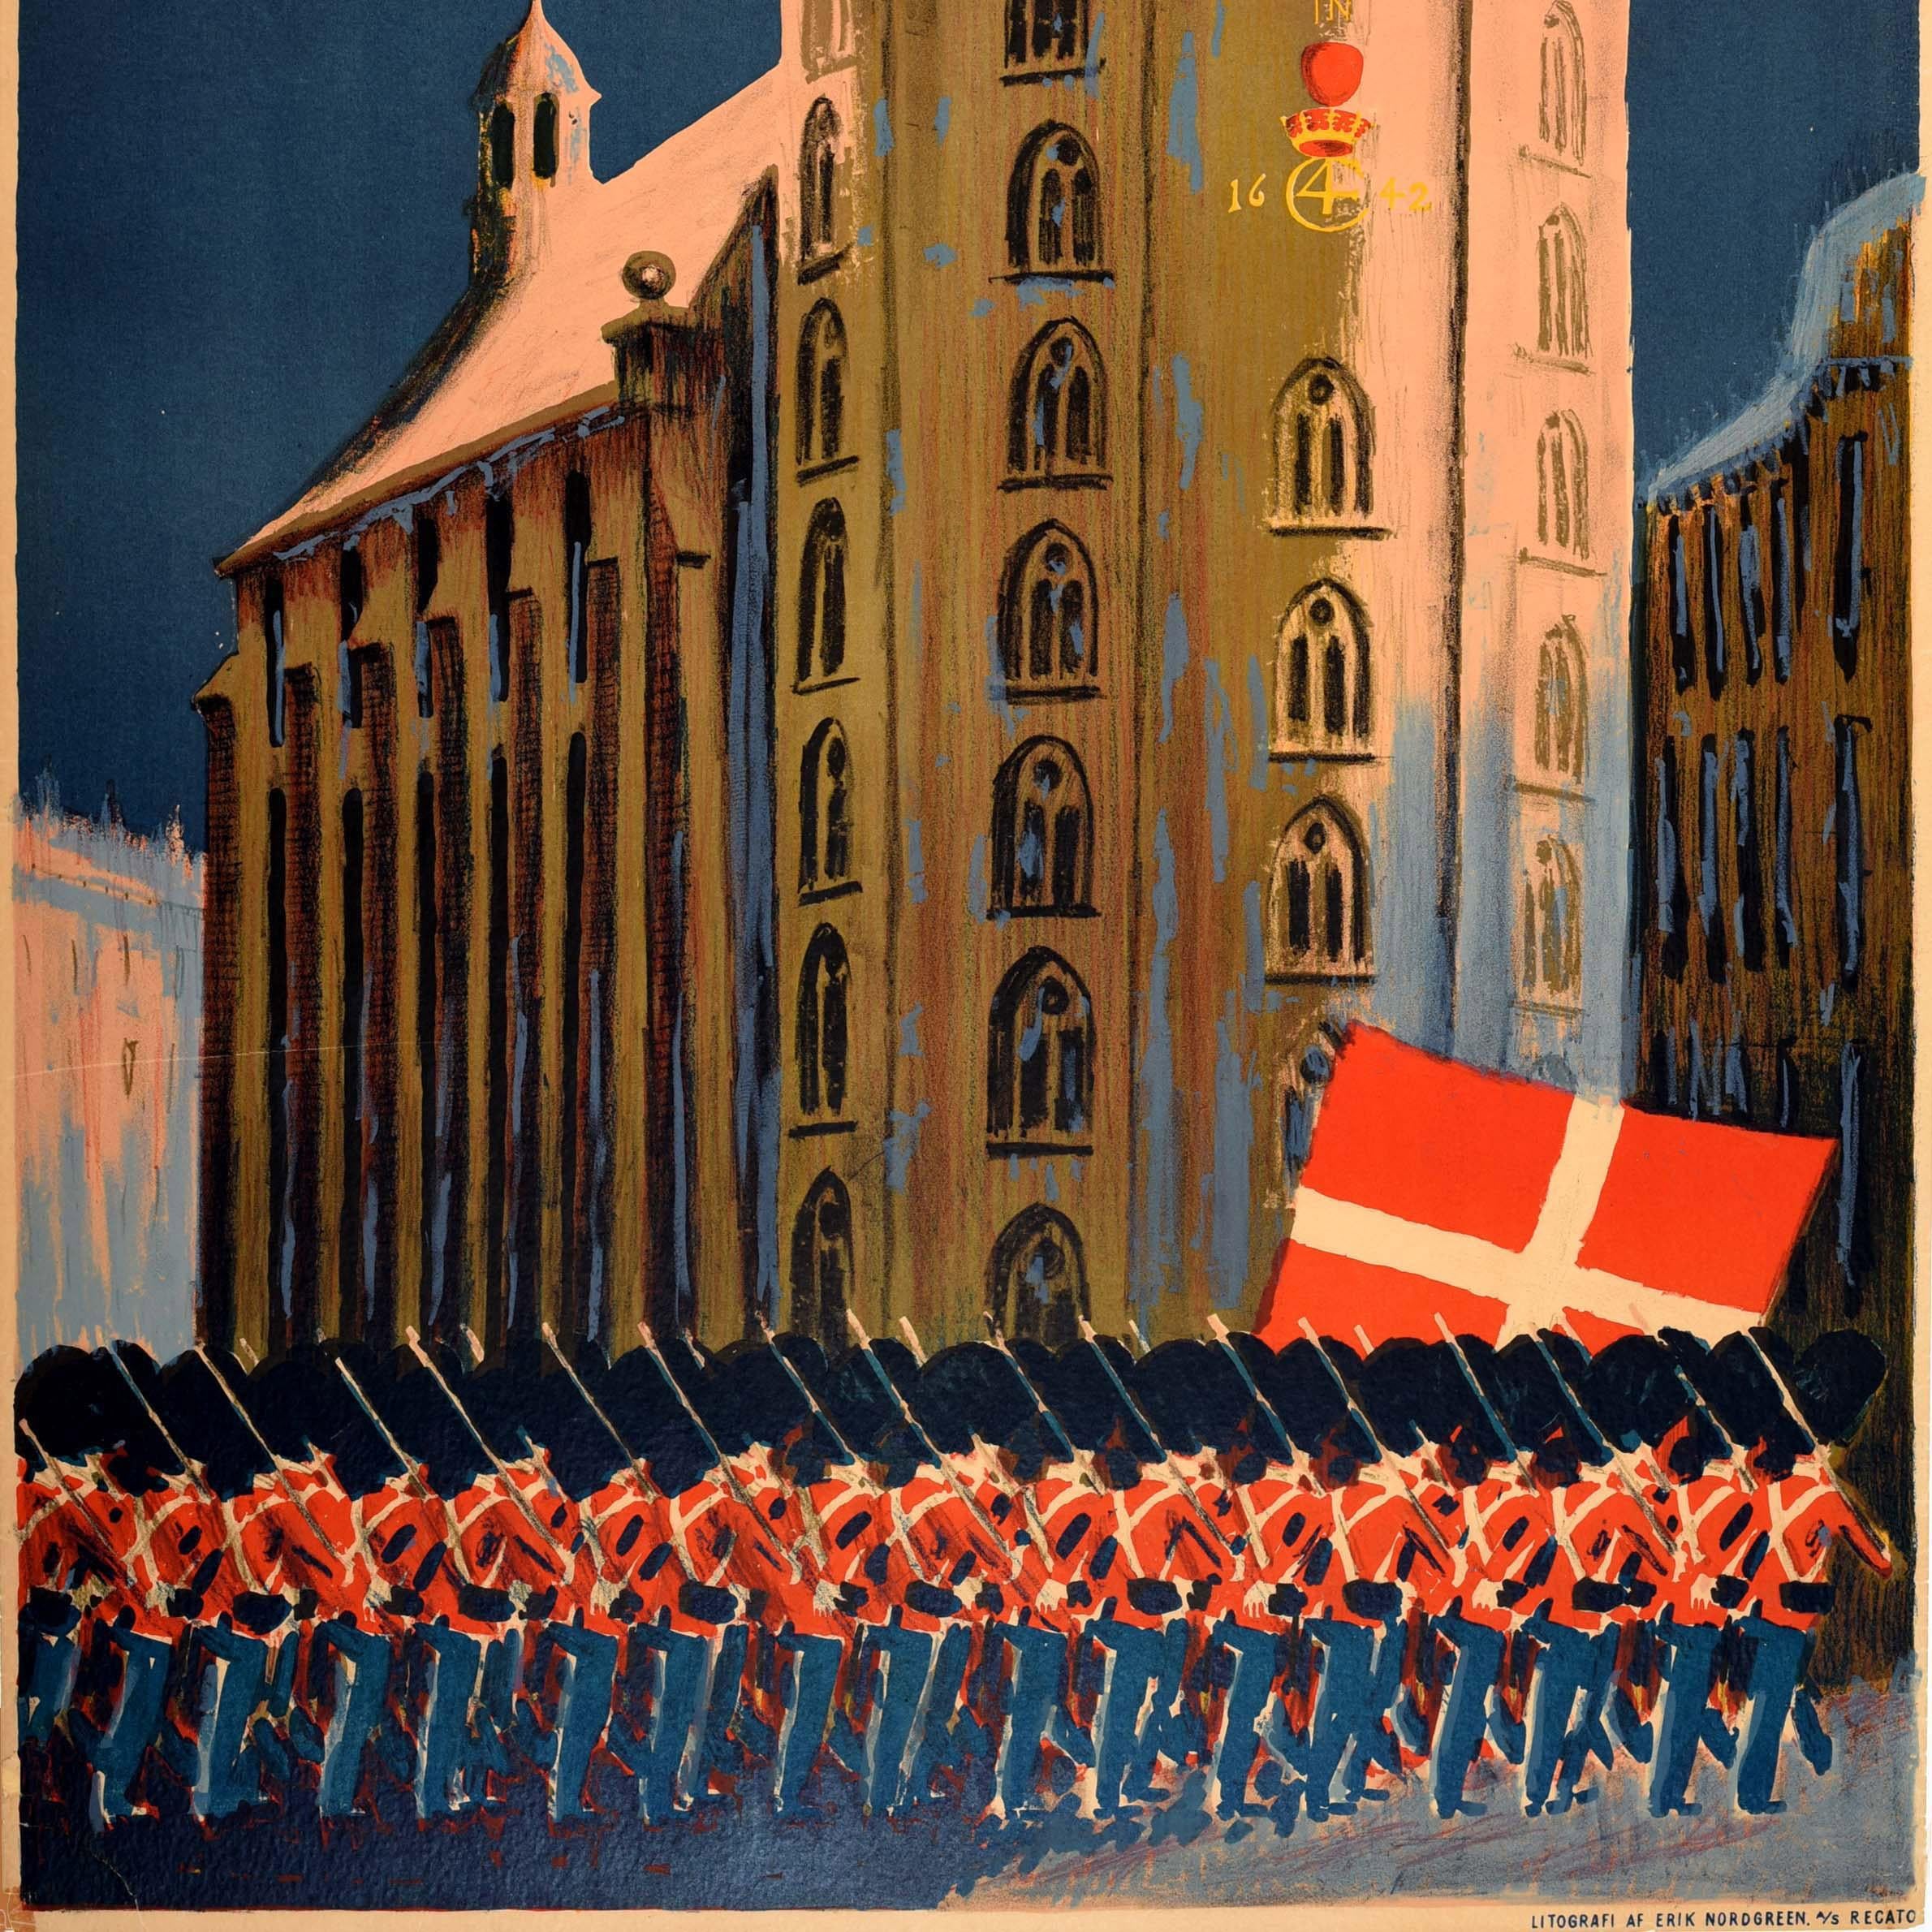 Original Vintage-Reiseplakat für Kopenhagen Dänemark mit Soldaten der Königlichen Garde, die mit einer rot-weiß gekreuzten dänischen Flagge an der historischen Sternwarte Rundetaarn / Round Tower aus dem 17. Jahrhundert und der Universitätskapelle